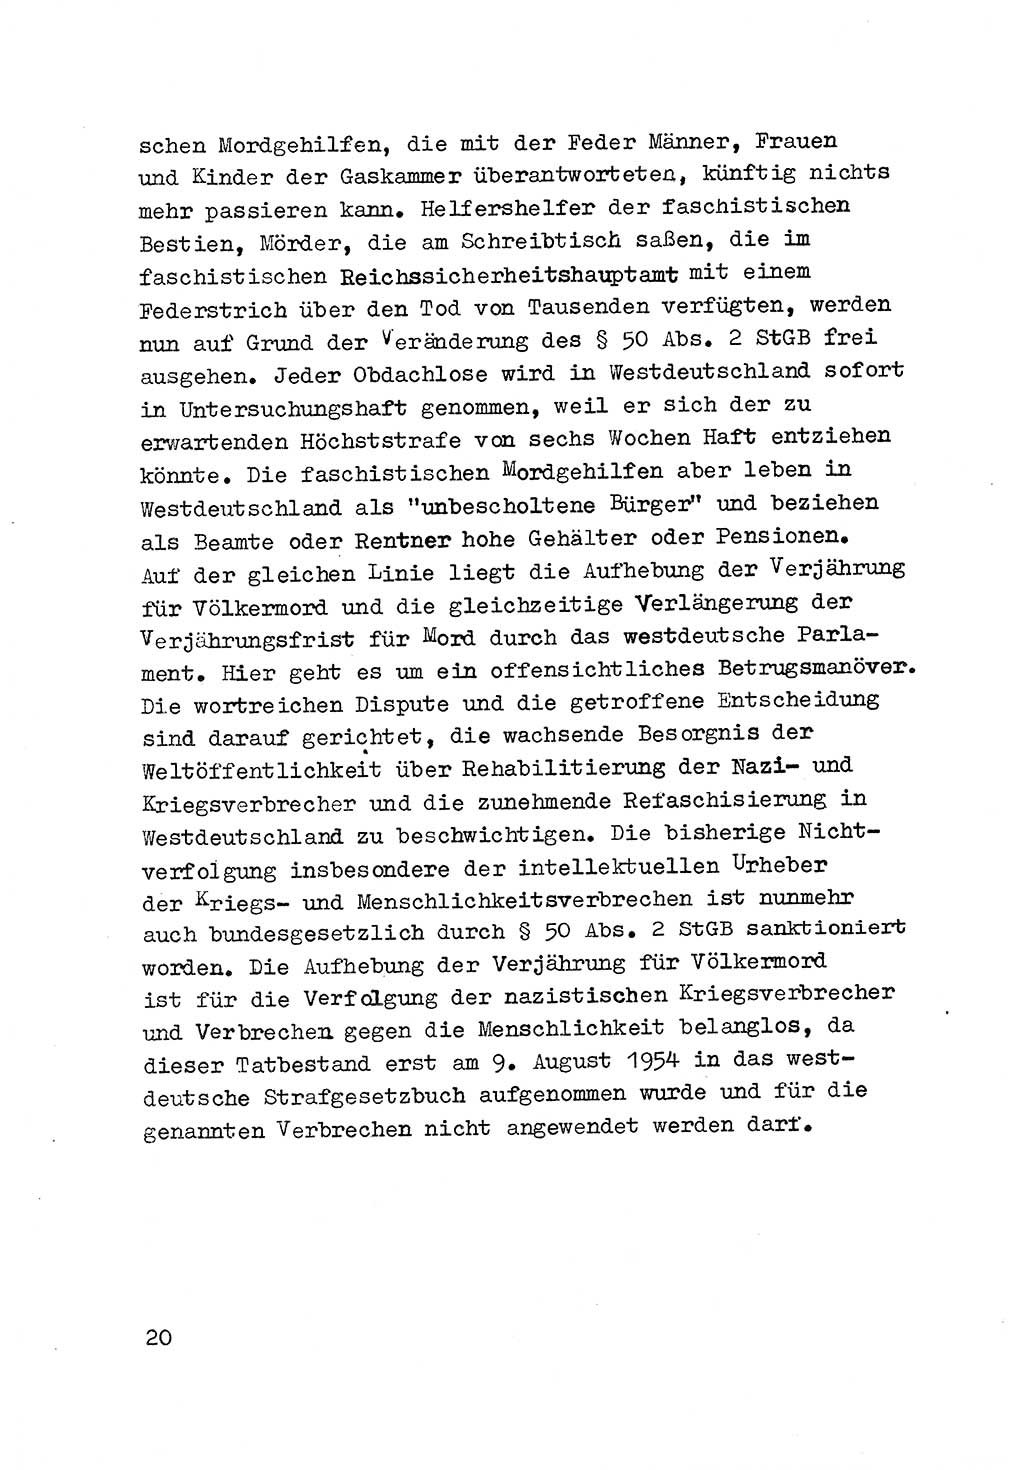 Strafrecht der DDR (Deutsche Demokratische Republik), Besonderer Teil, Lehrmaterial, Heft 3 1969, Seite 20 (Strafr. DDR BT Lehrmat. H. 3 1969, S. 20)